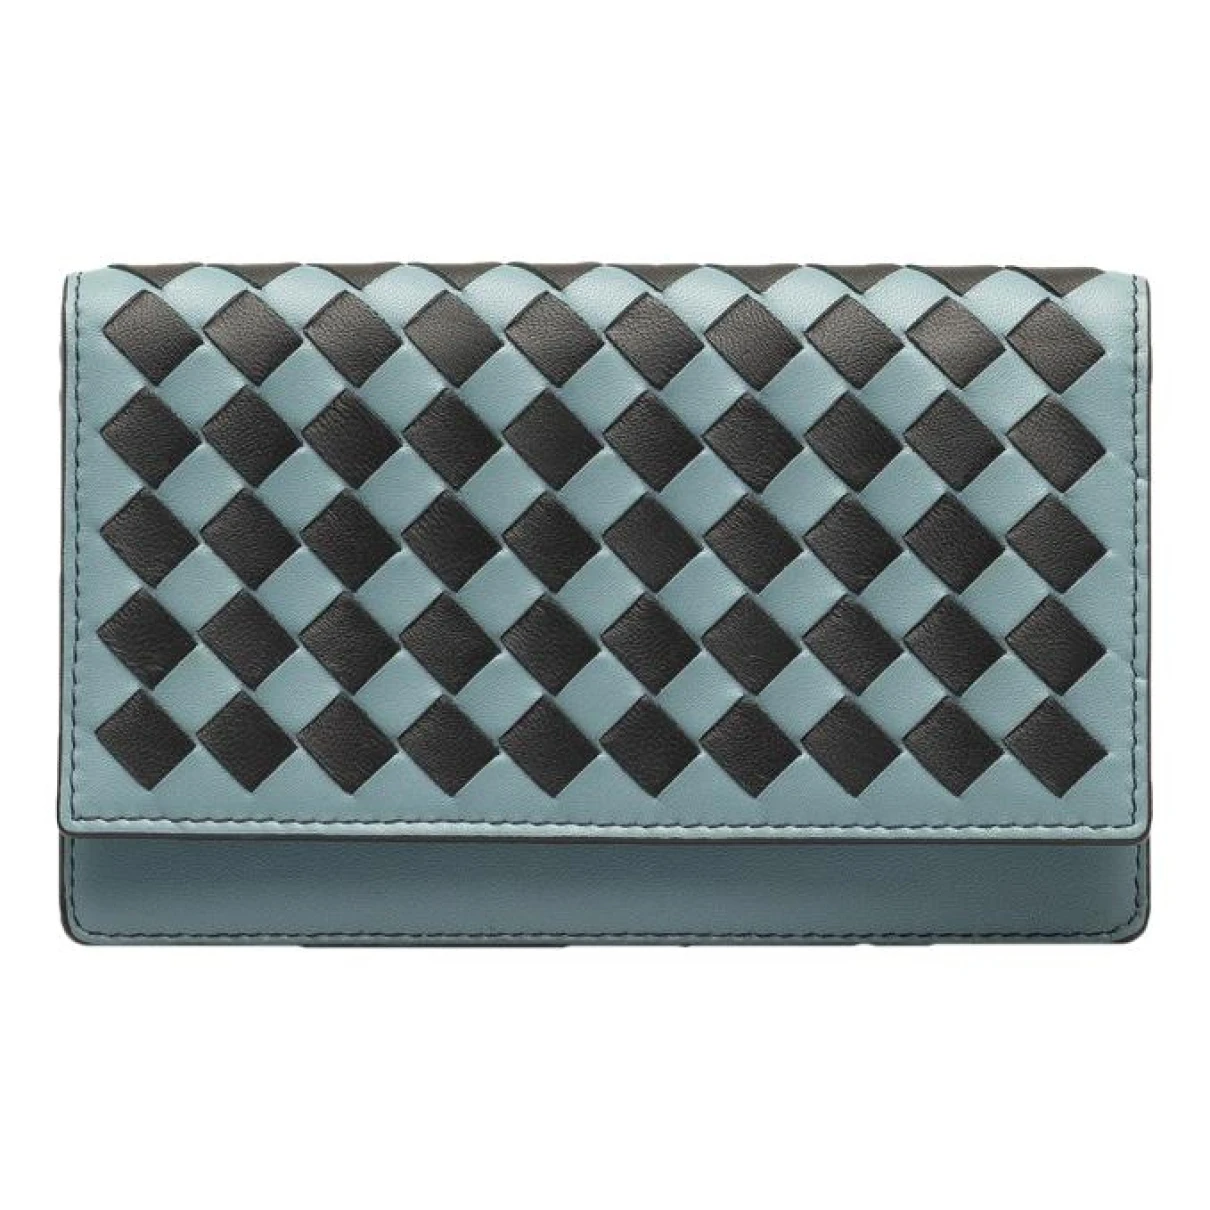 Pre-owned Bottega Veneta Intrecciato Leather Wallet In Blue